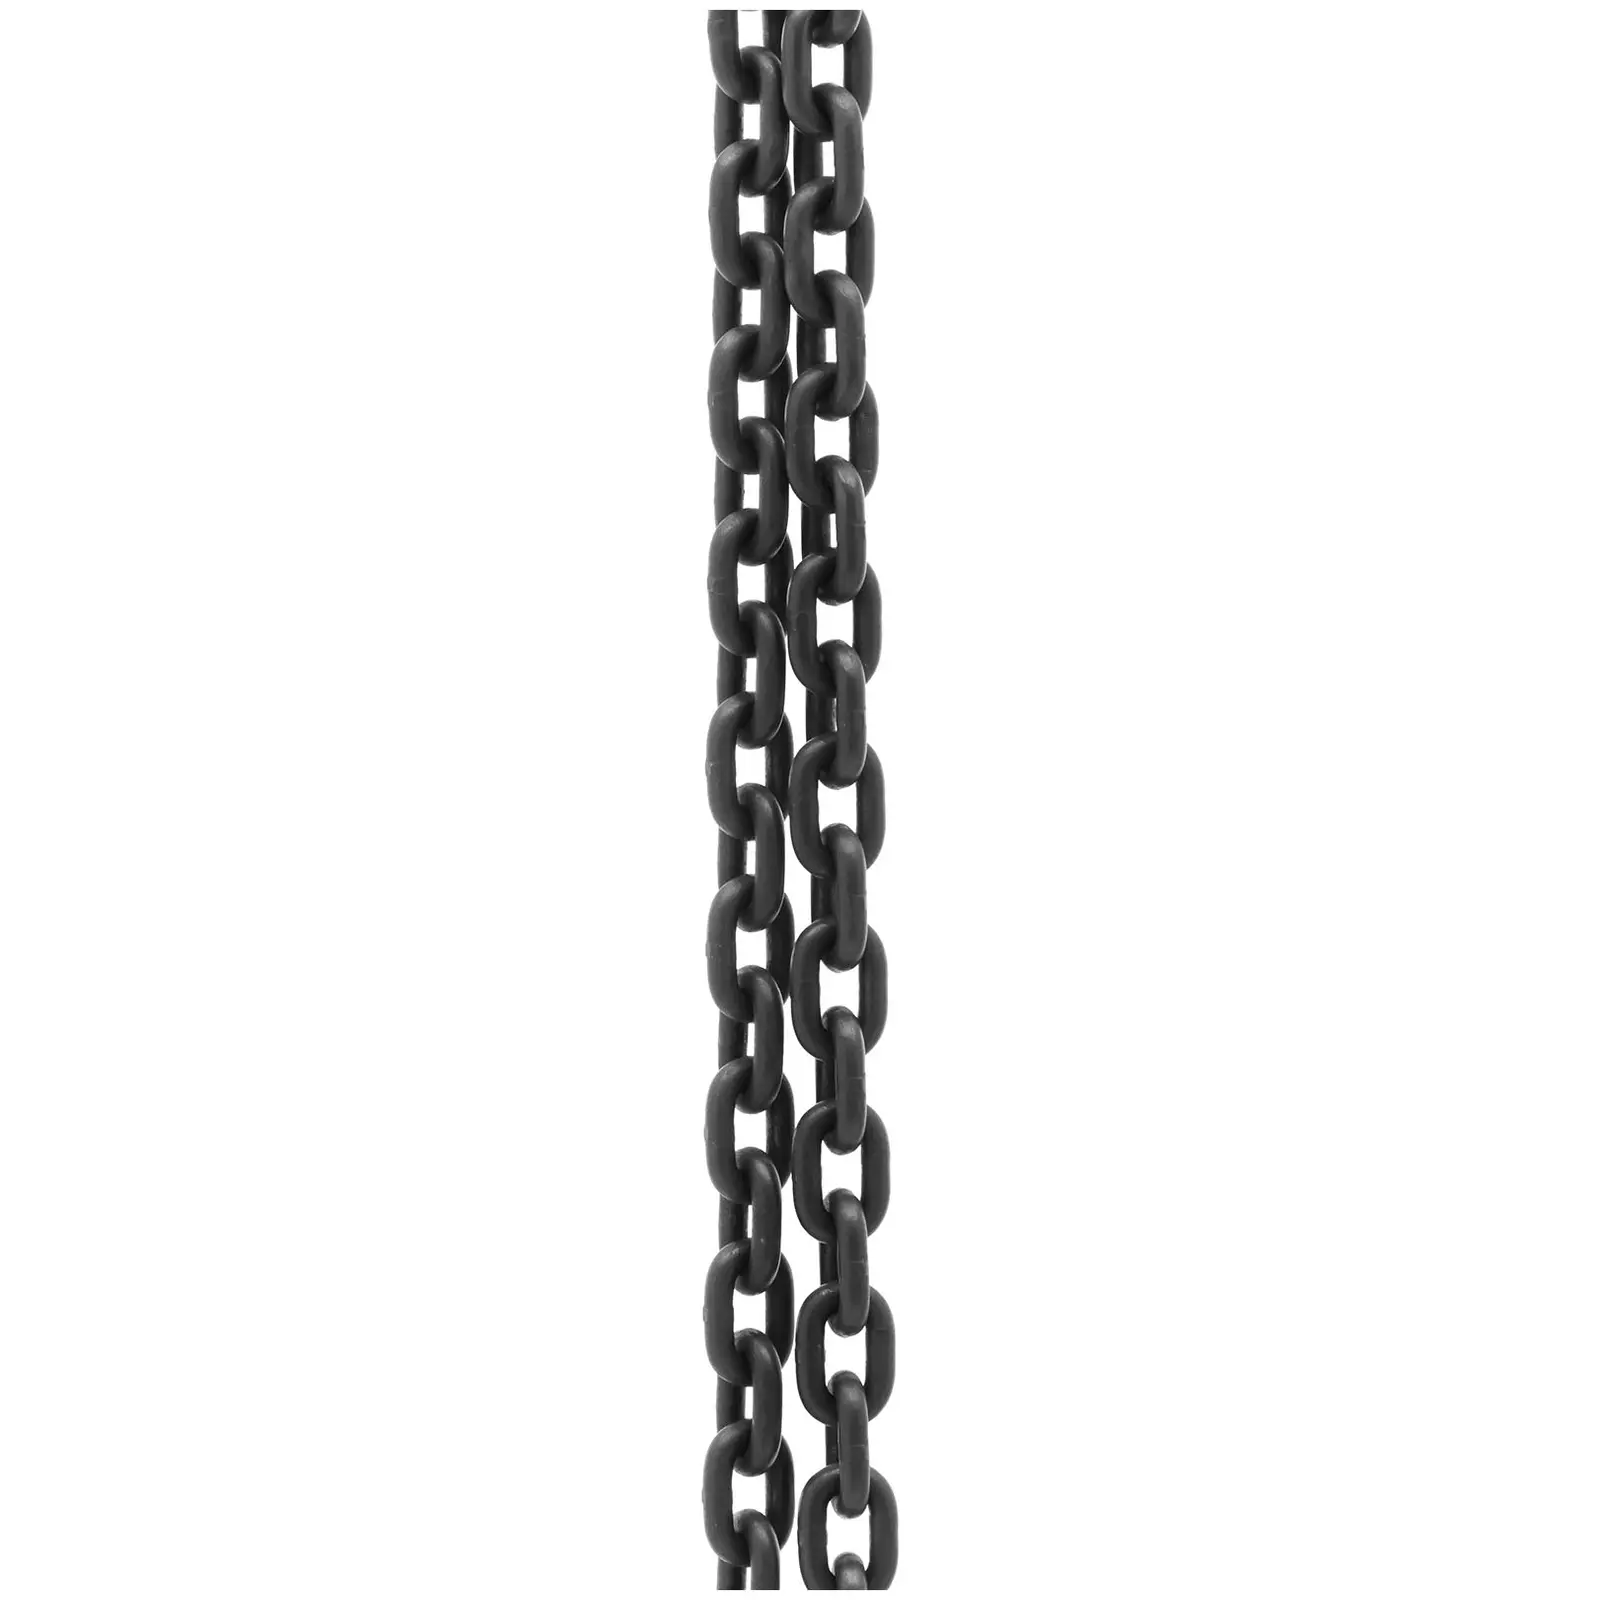 Kæde til ophæng - 2000 kg - 2,5 m - sort og rød